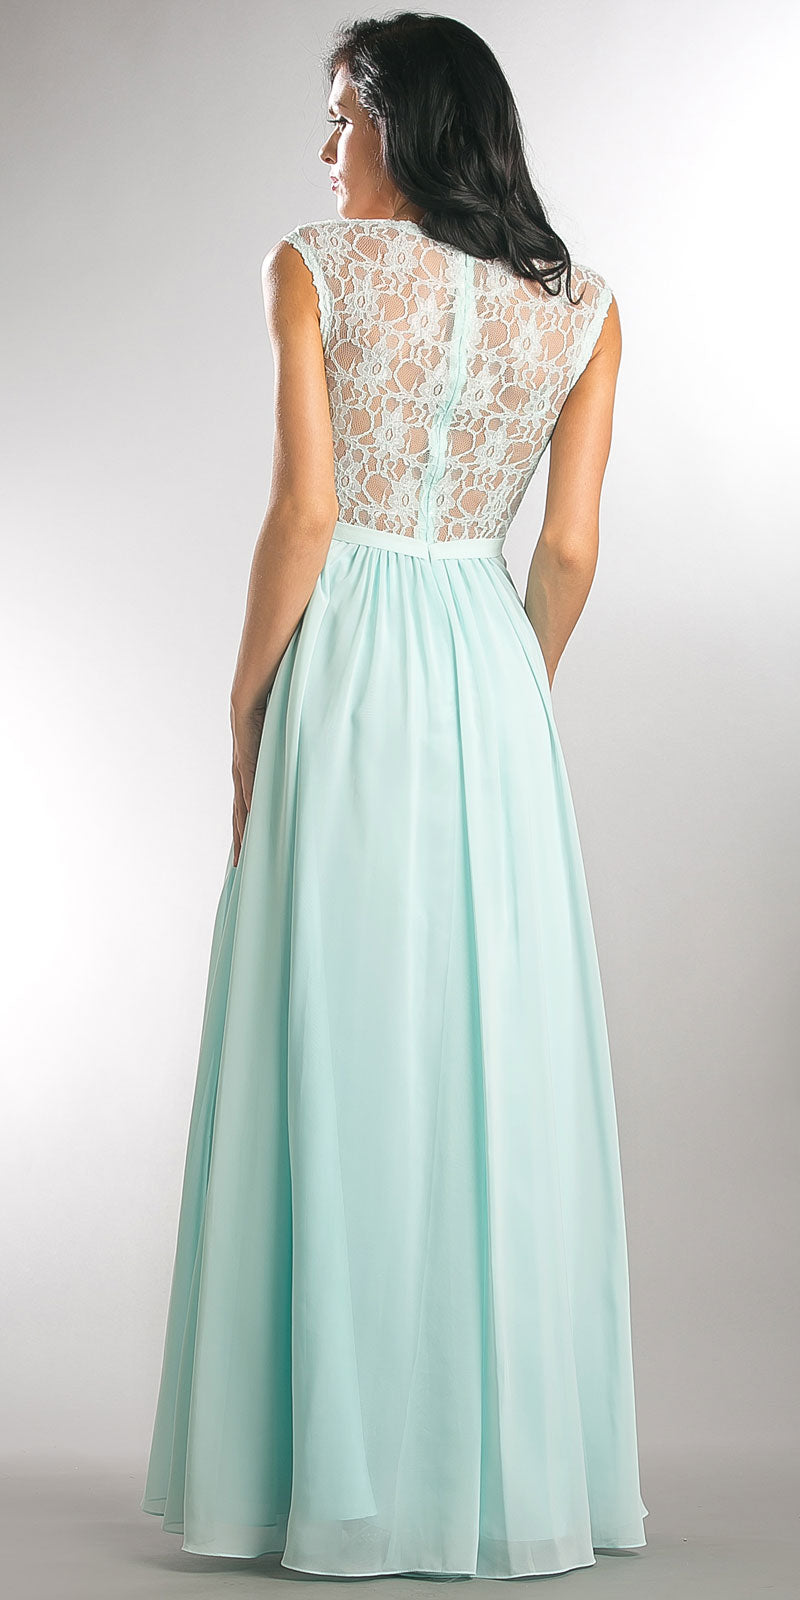 Image of V-neck Lace Top Empire Cut Long Bridesmaid Dress back in Aqua